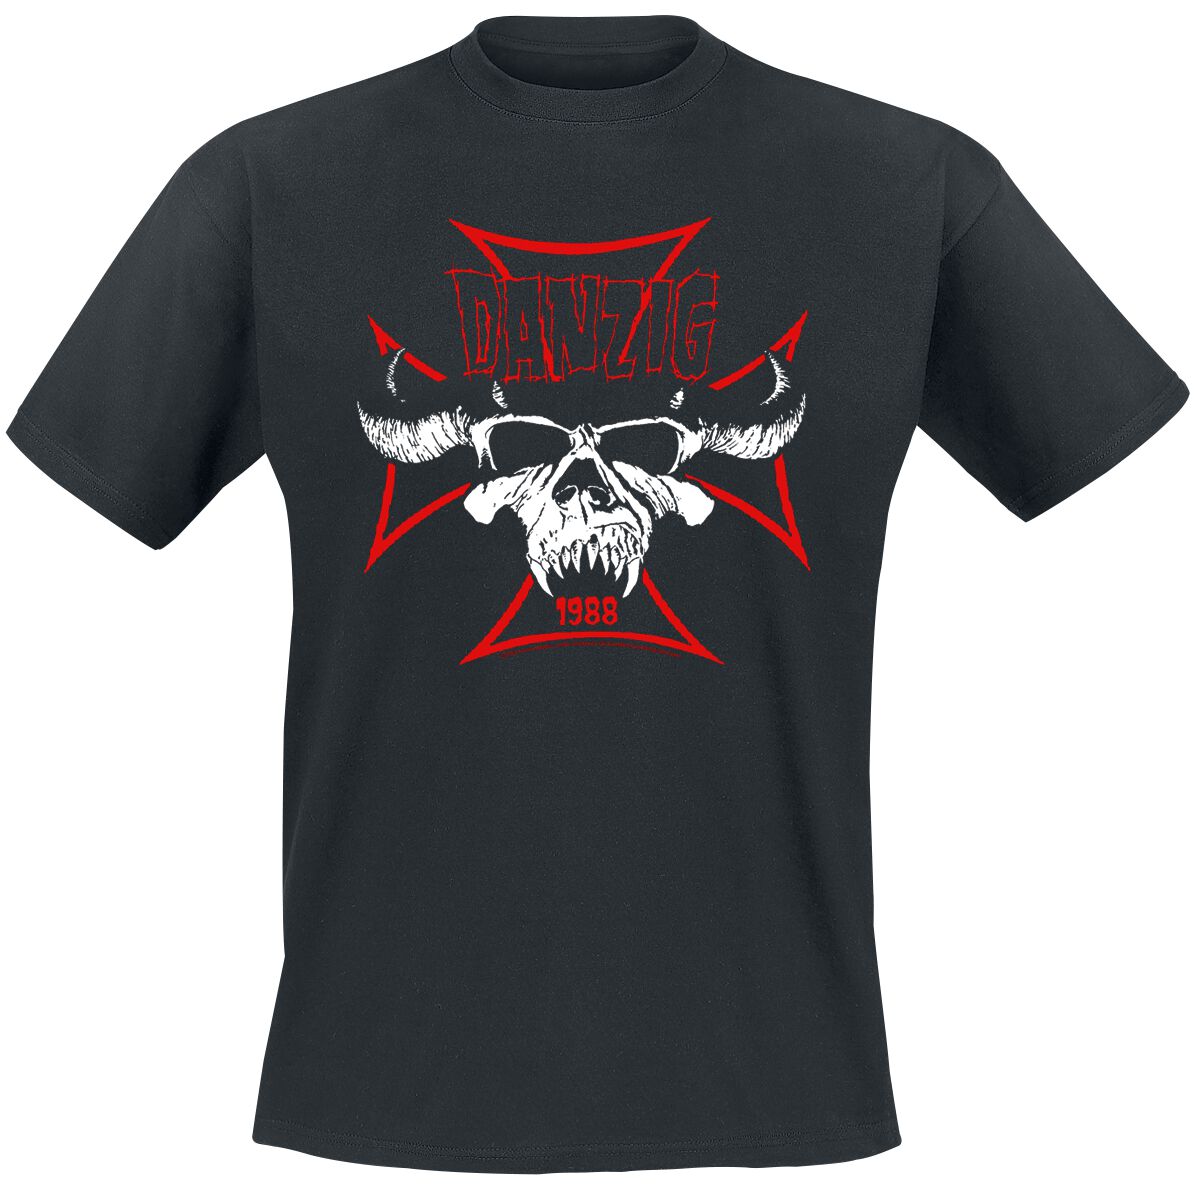 Danzig T-Shirt - Cross Skull - S bis 3XL - für Männer - Größe XL - schwarz  - Lizenziertes Merchandise!